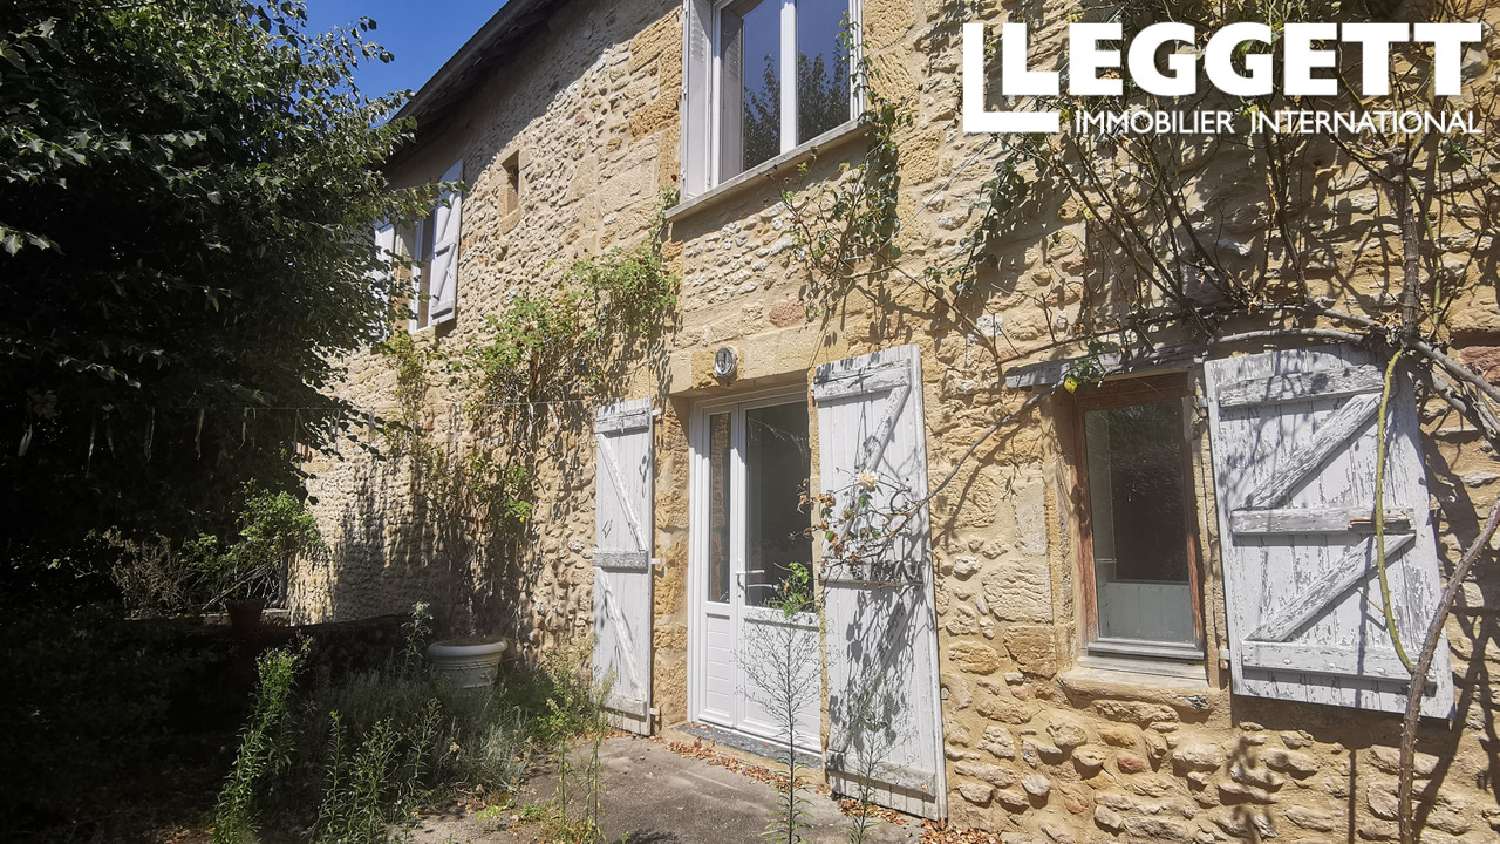  à vendre maison de village Plazac Dordogne 3